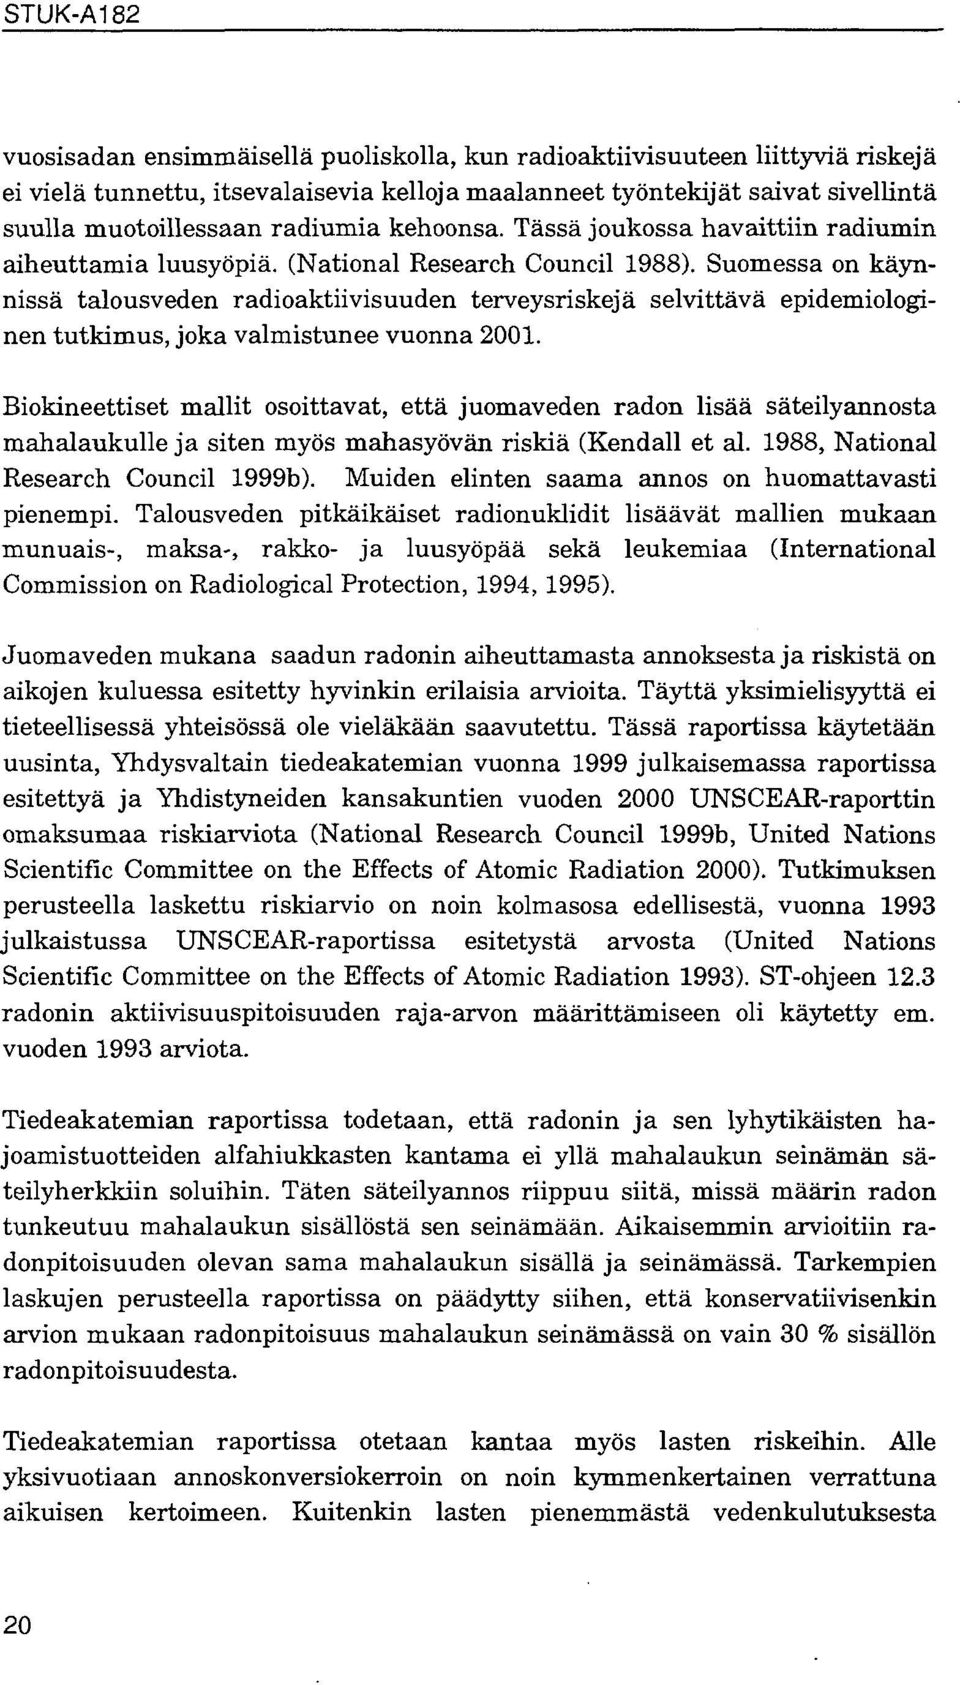 Suomessa on käynnissä talousveden radioaktiivisuuden terveysriskejä selvittävä epidemiologinen tutkimus, joka valmistunee vuonna 2001.